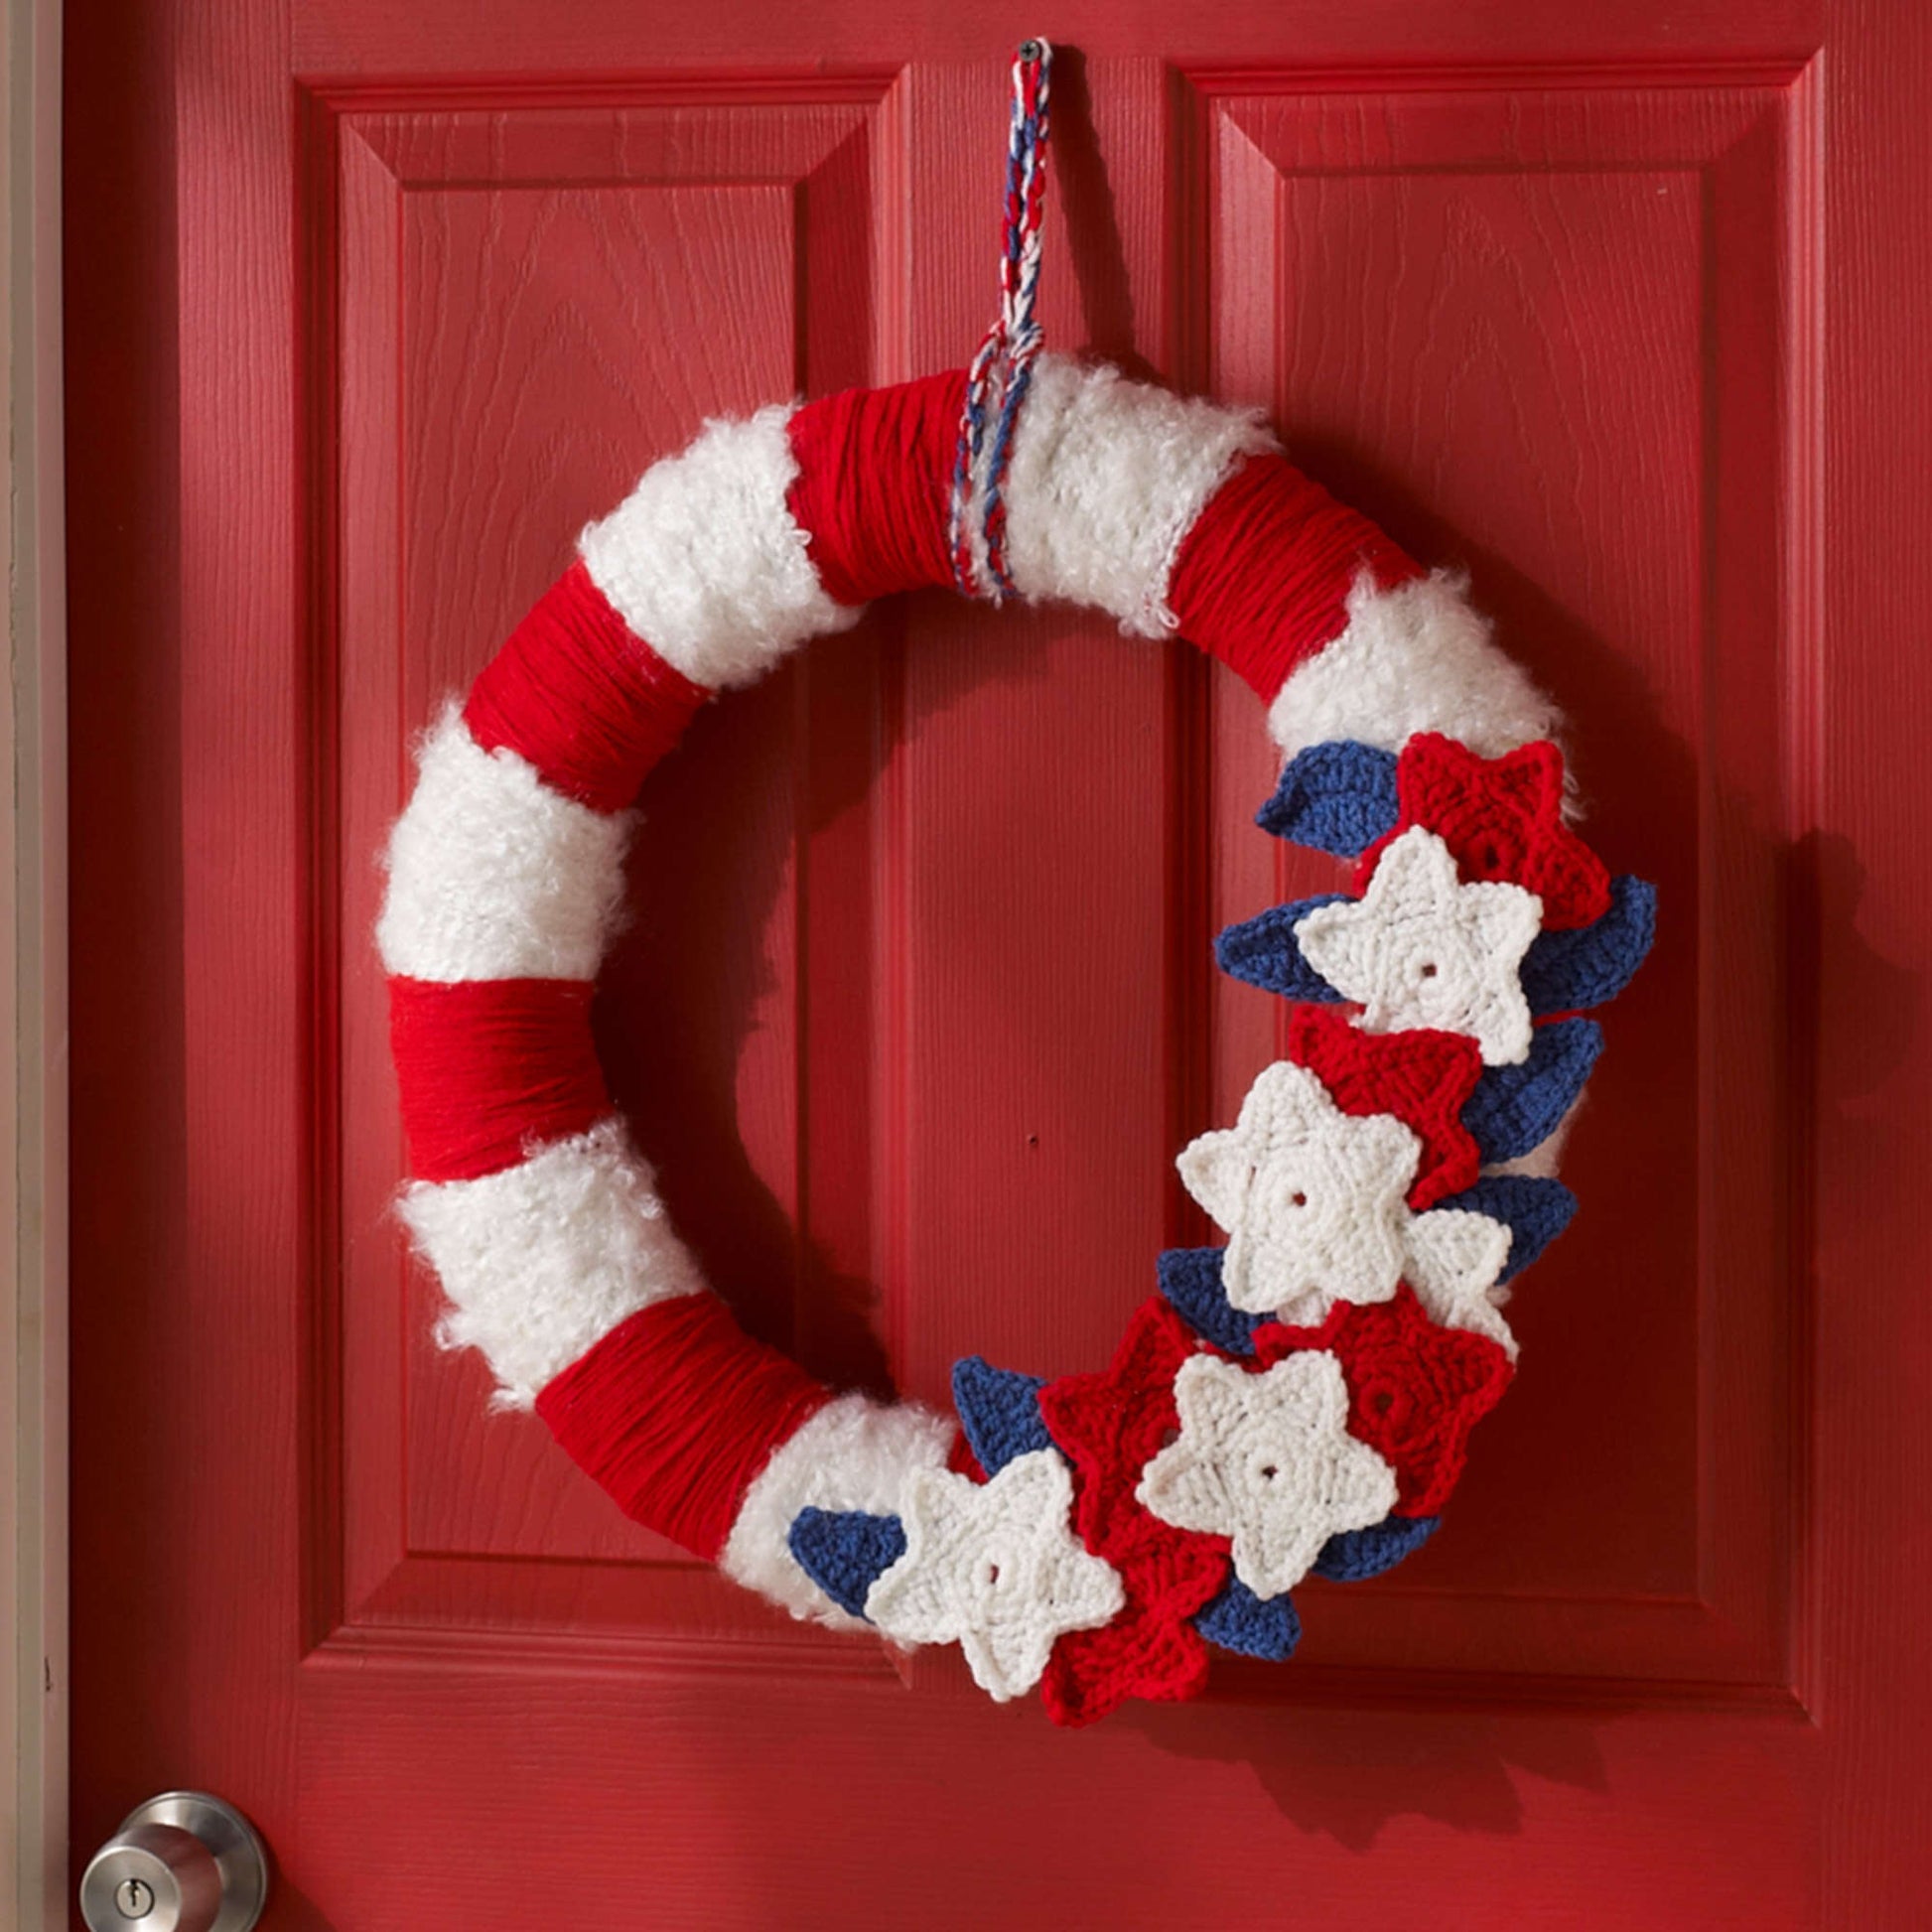 Free Red Heart Crochet Stars & Stripes Wreath Pattern